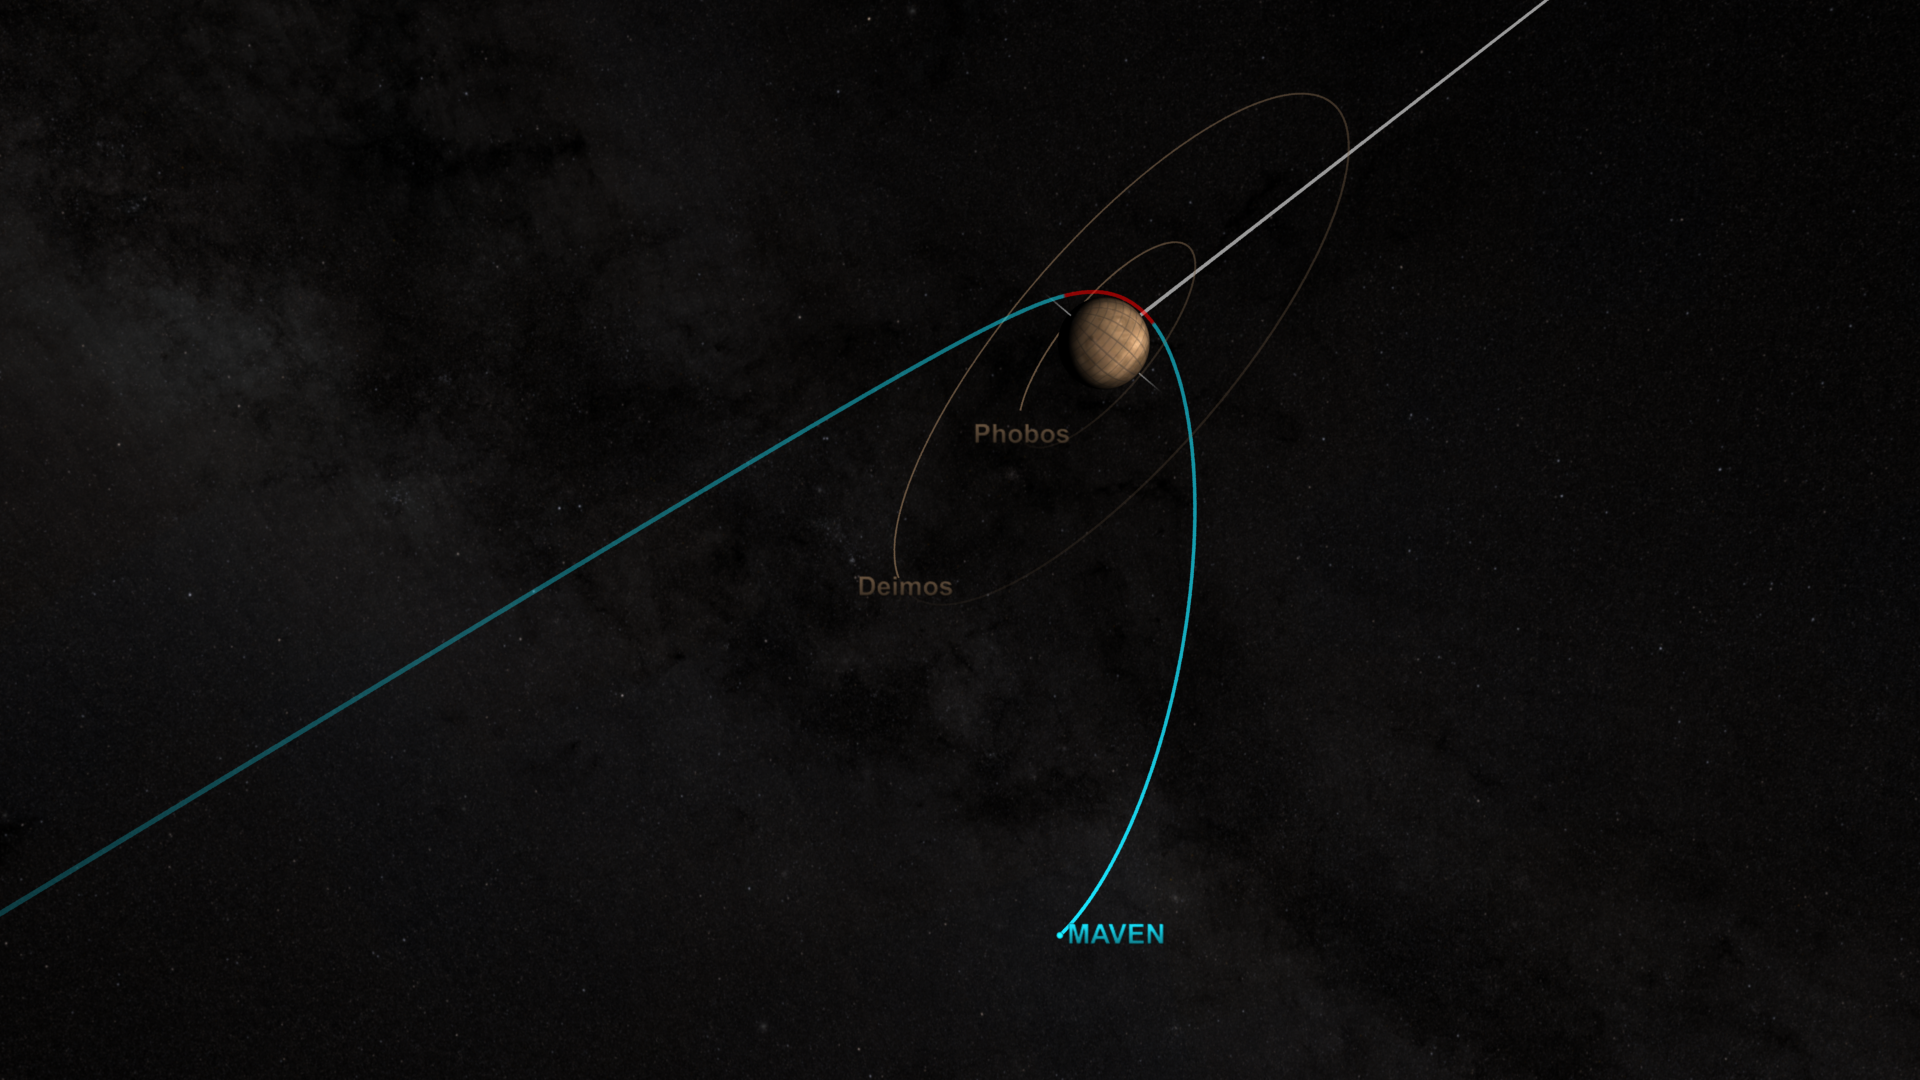 MAVEN orbit insertion animation